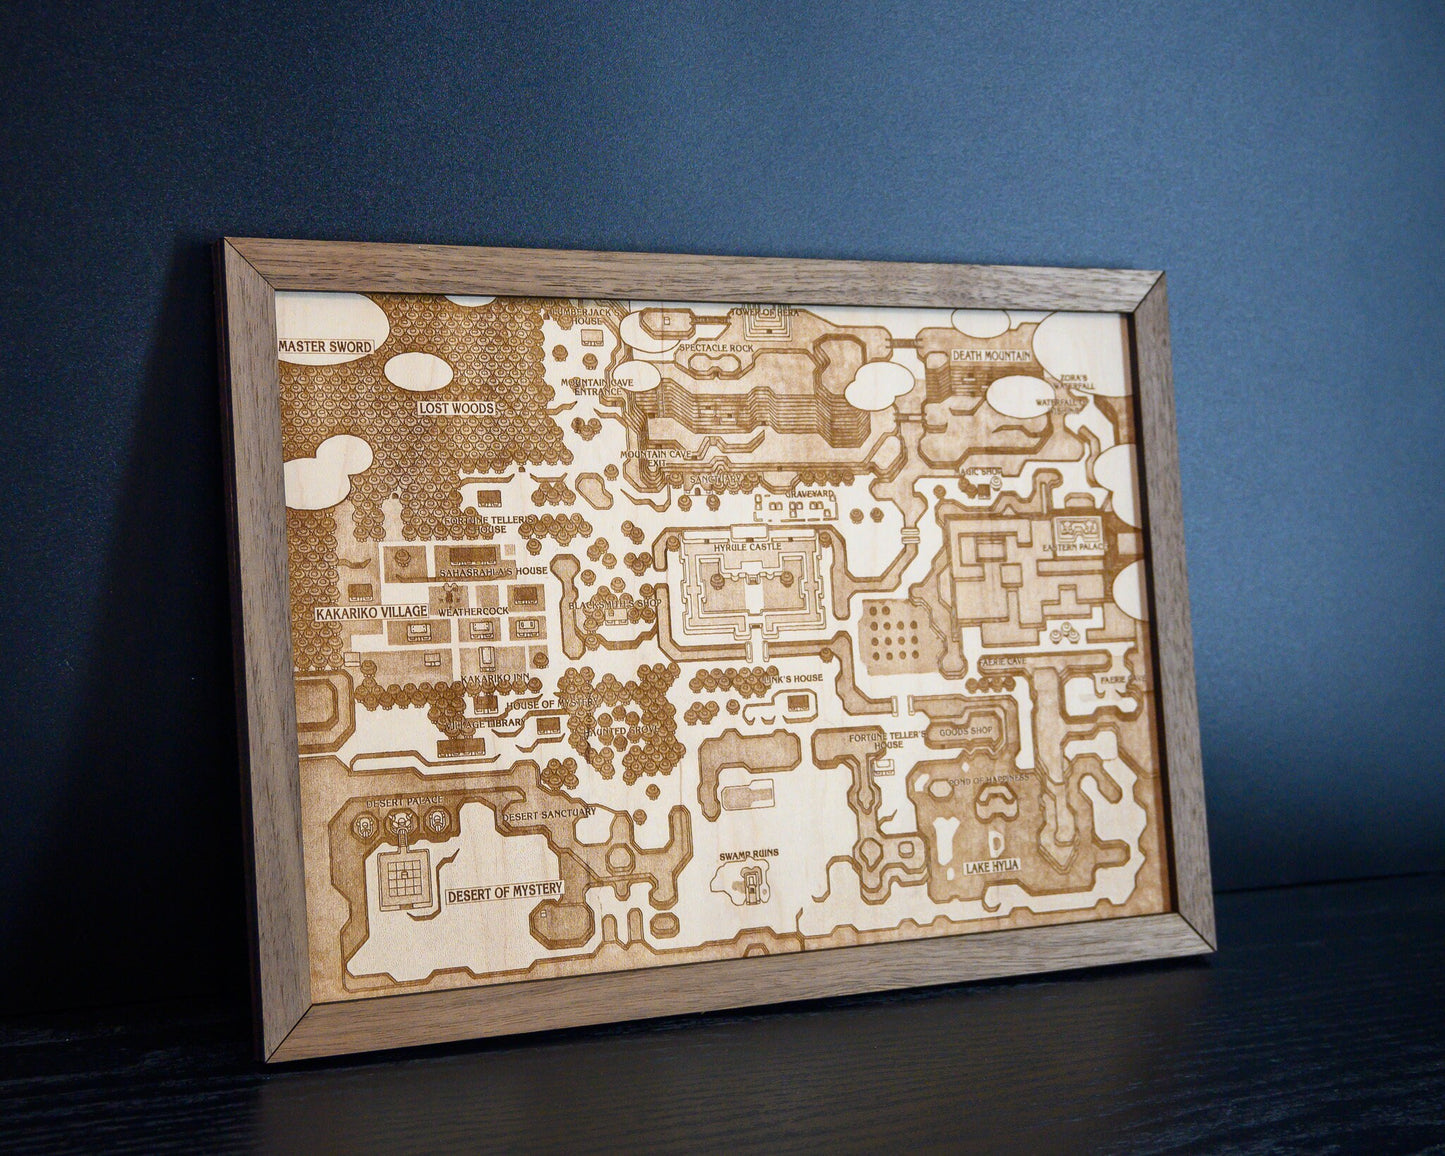 Legend of Zelda Link to the Past Map, Engraved Wood Zelda Poster